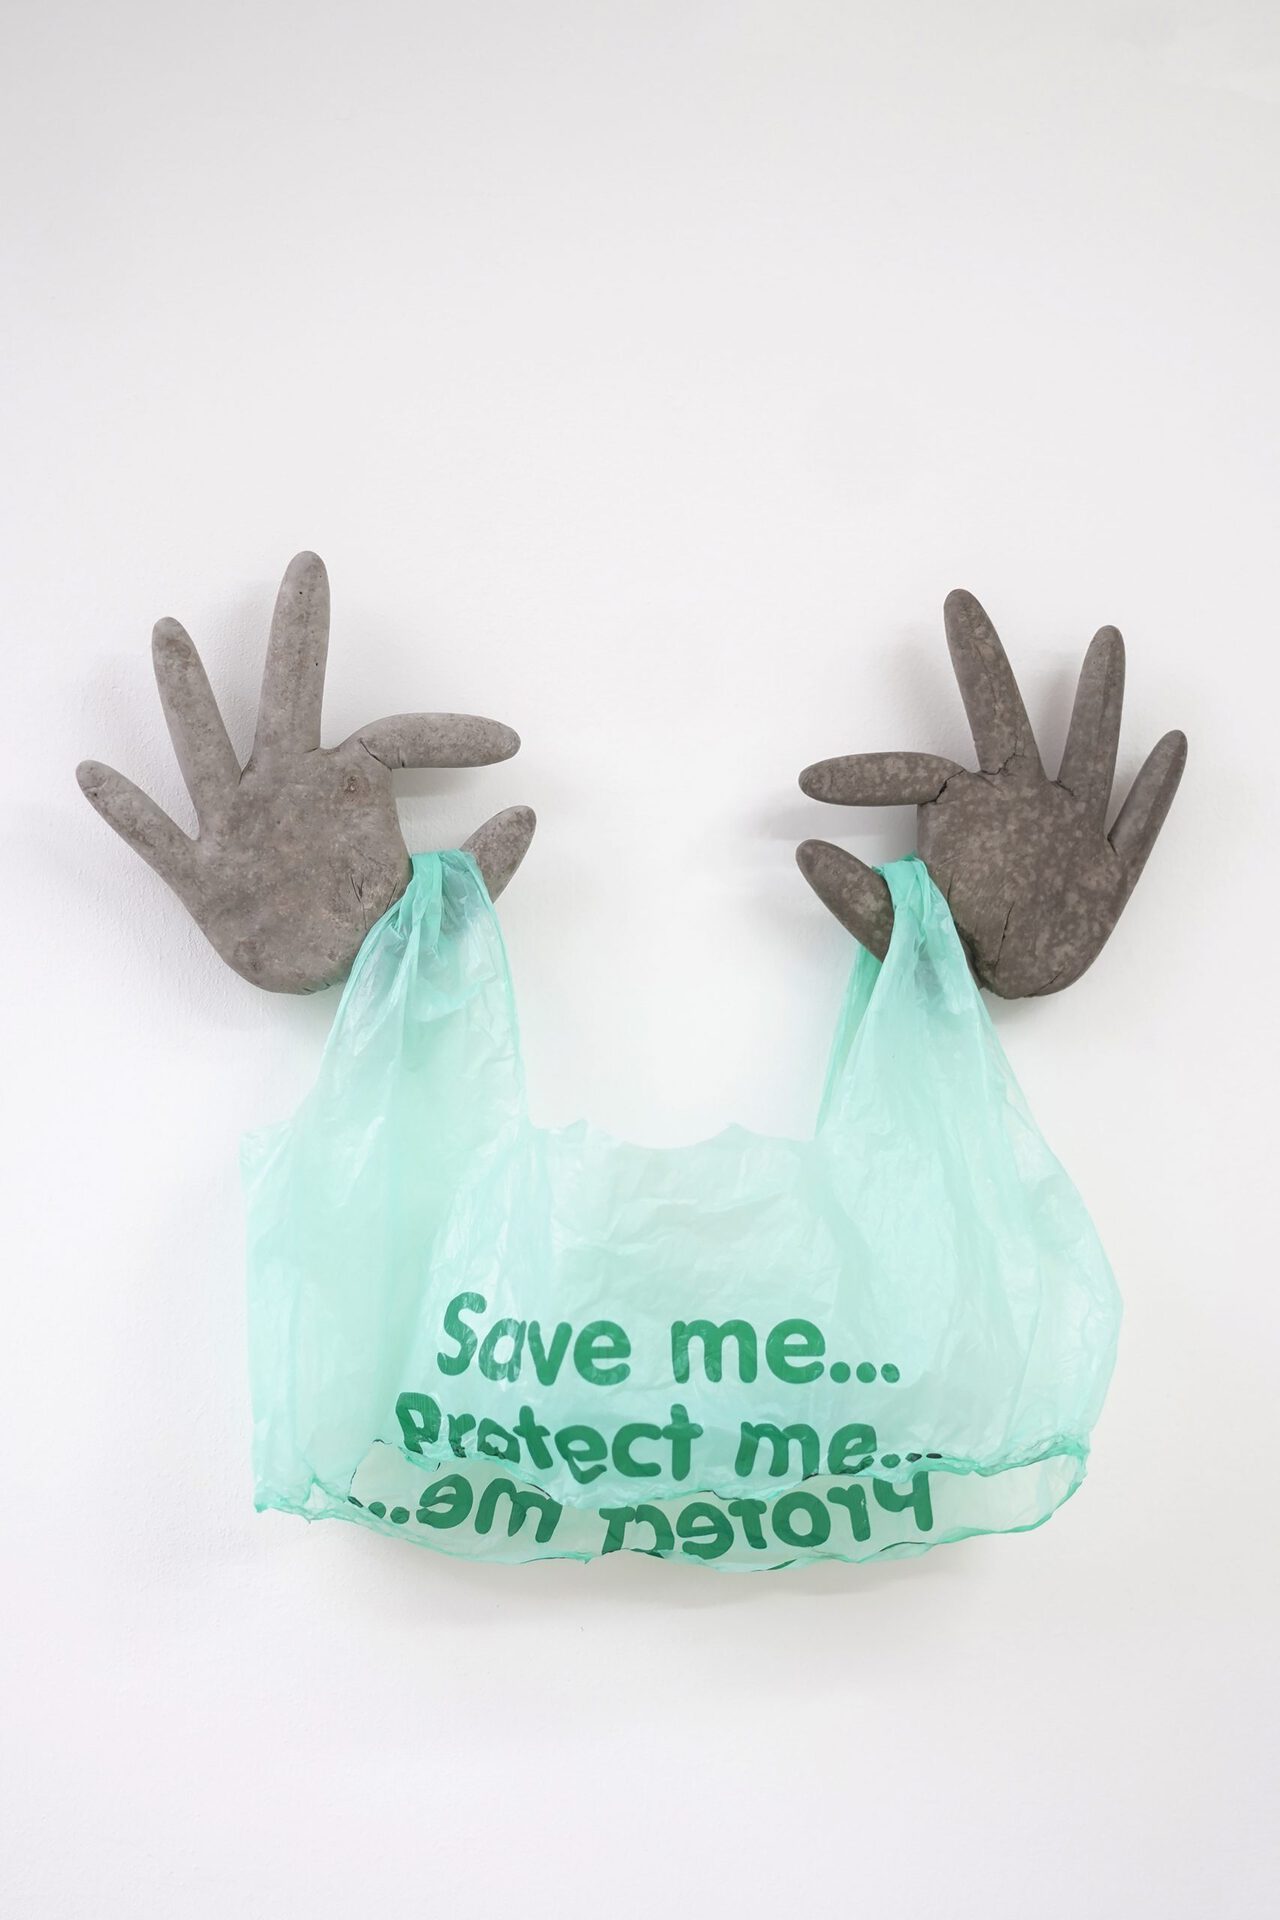 Ilona Balaga, Caring, 2021, cement cast and plastic bag, 45/40/5 cm